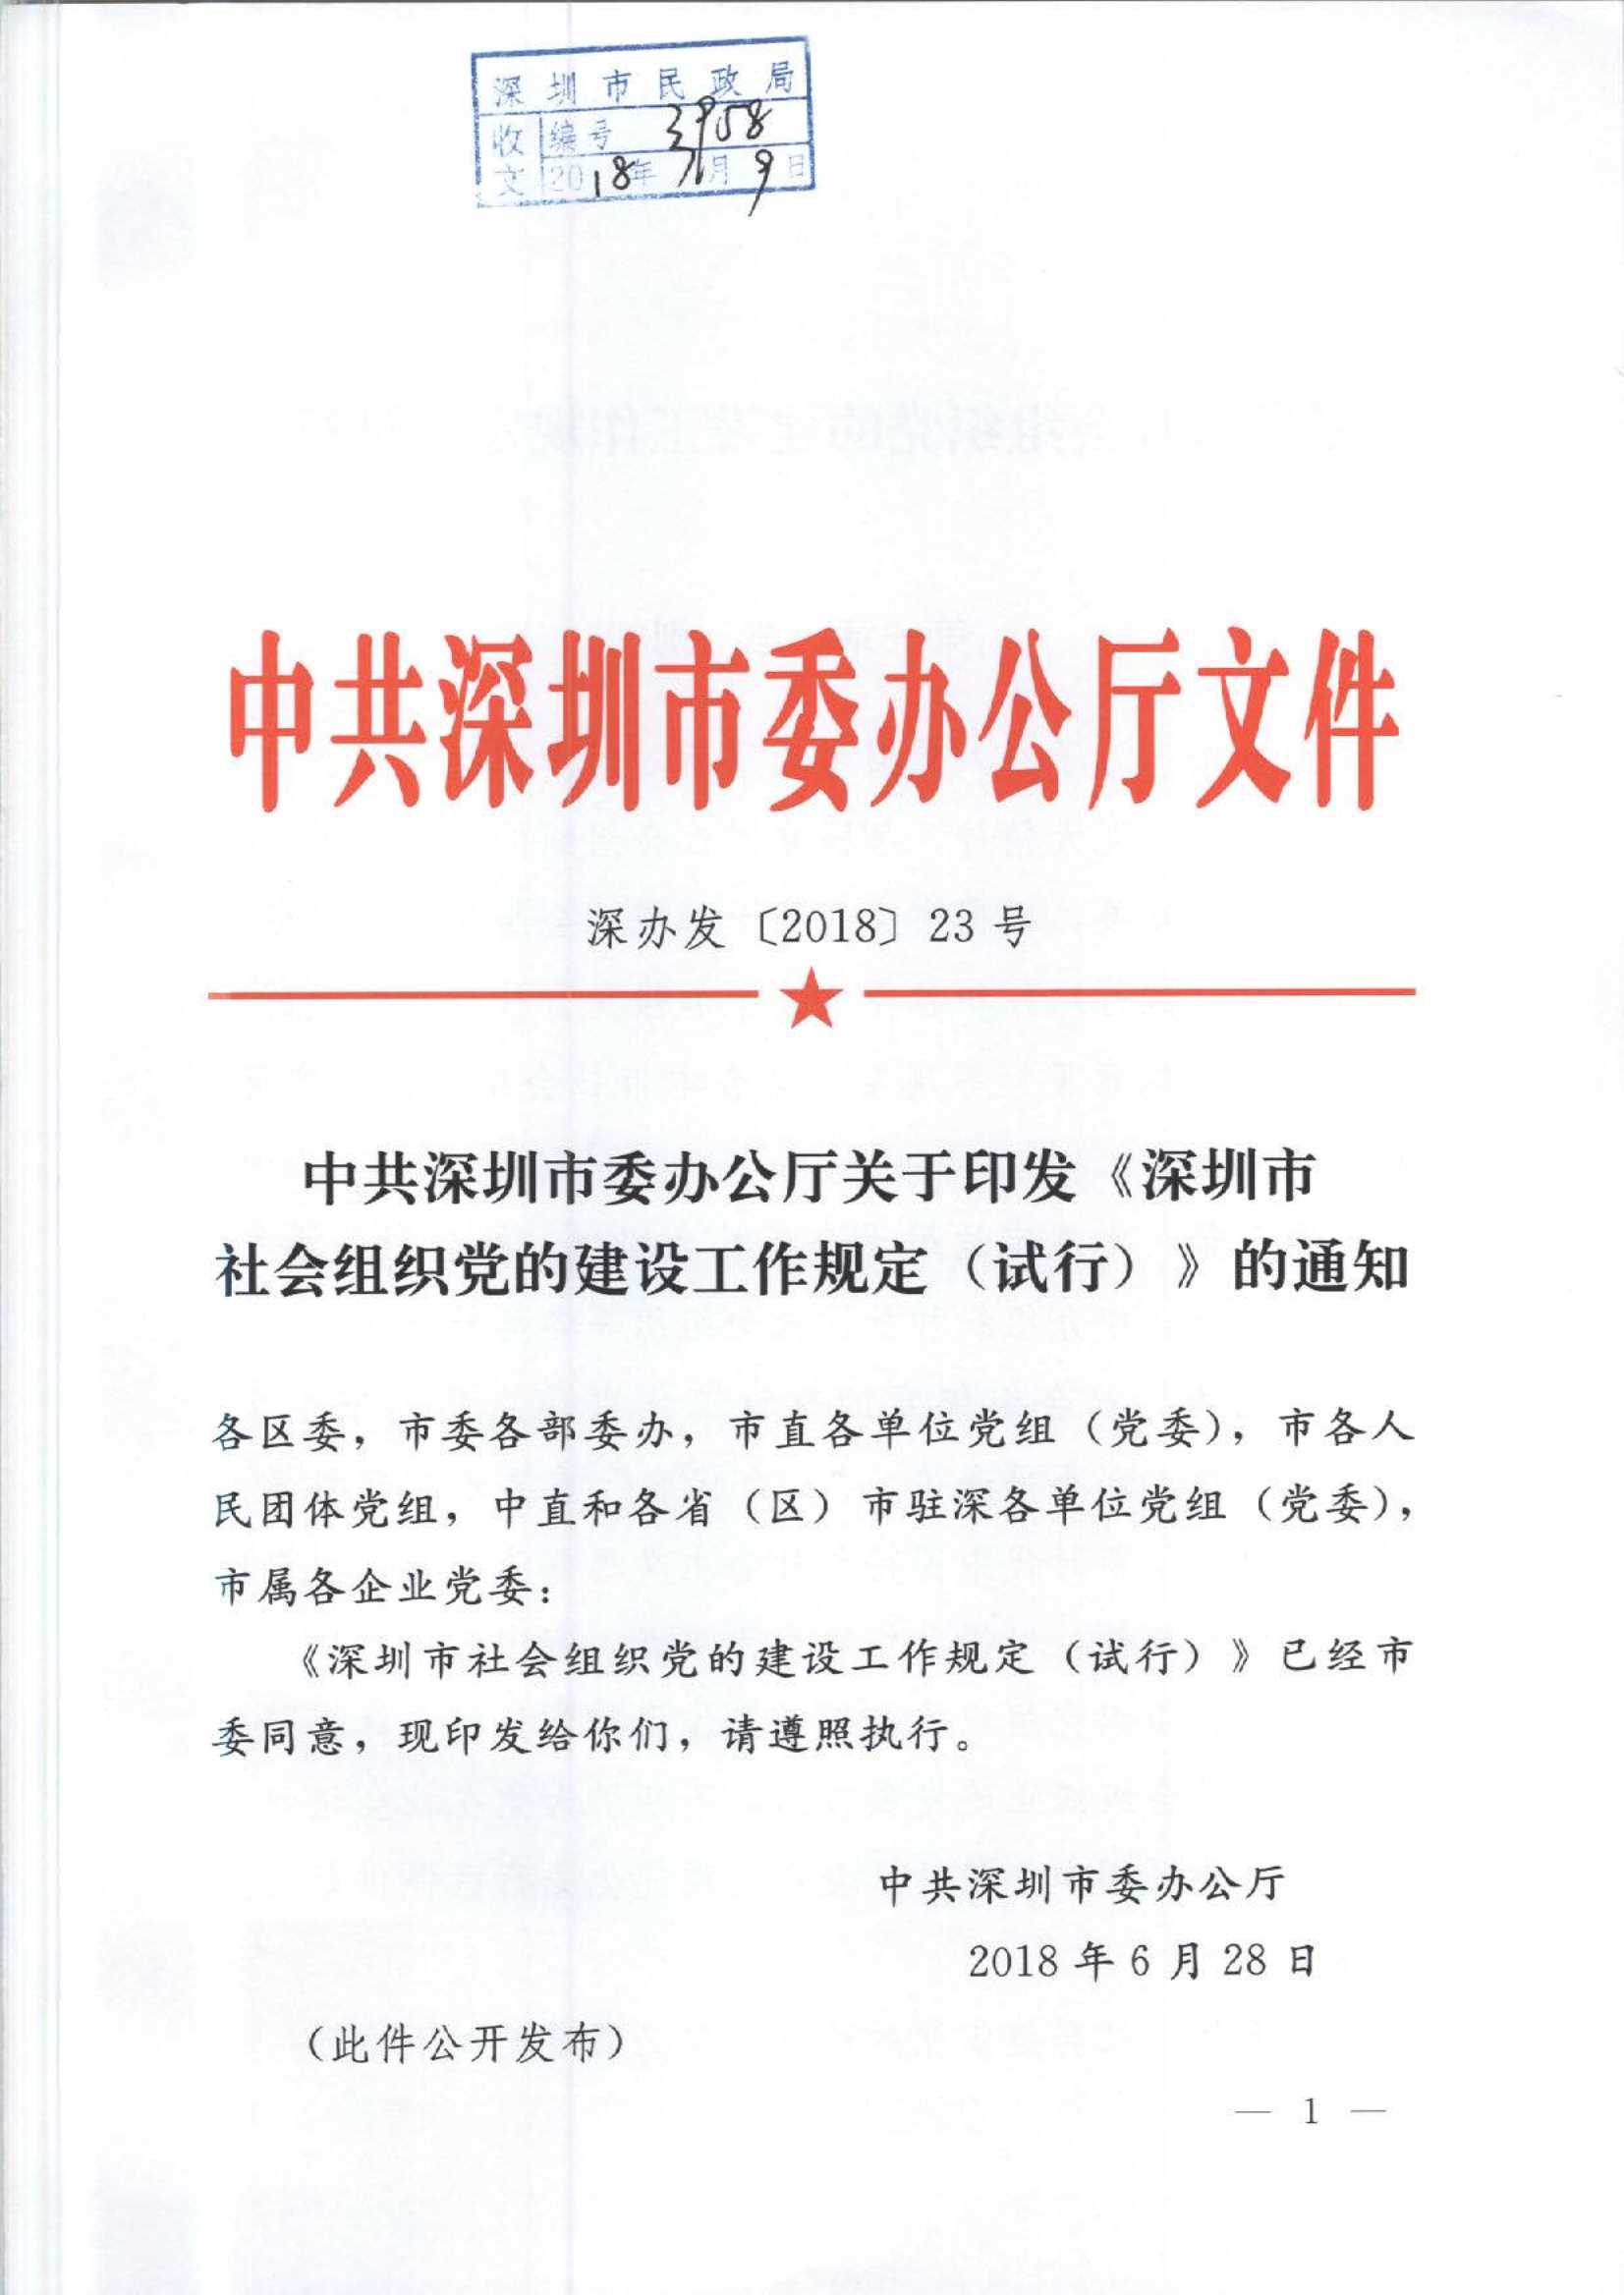 4.深圳市社会组织党的建设工作规定_1.Jpeg